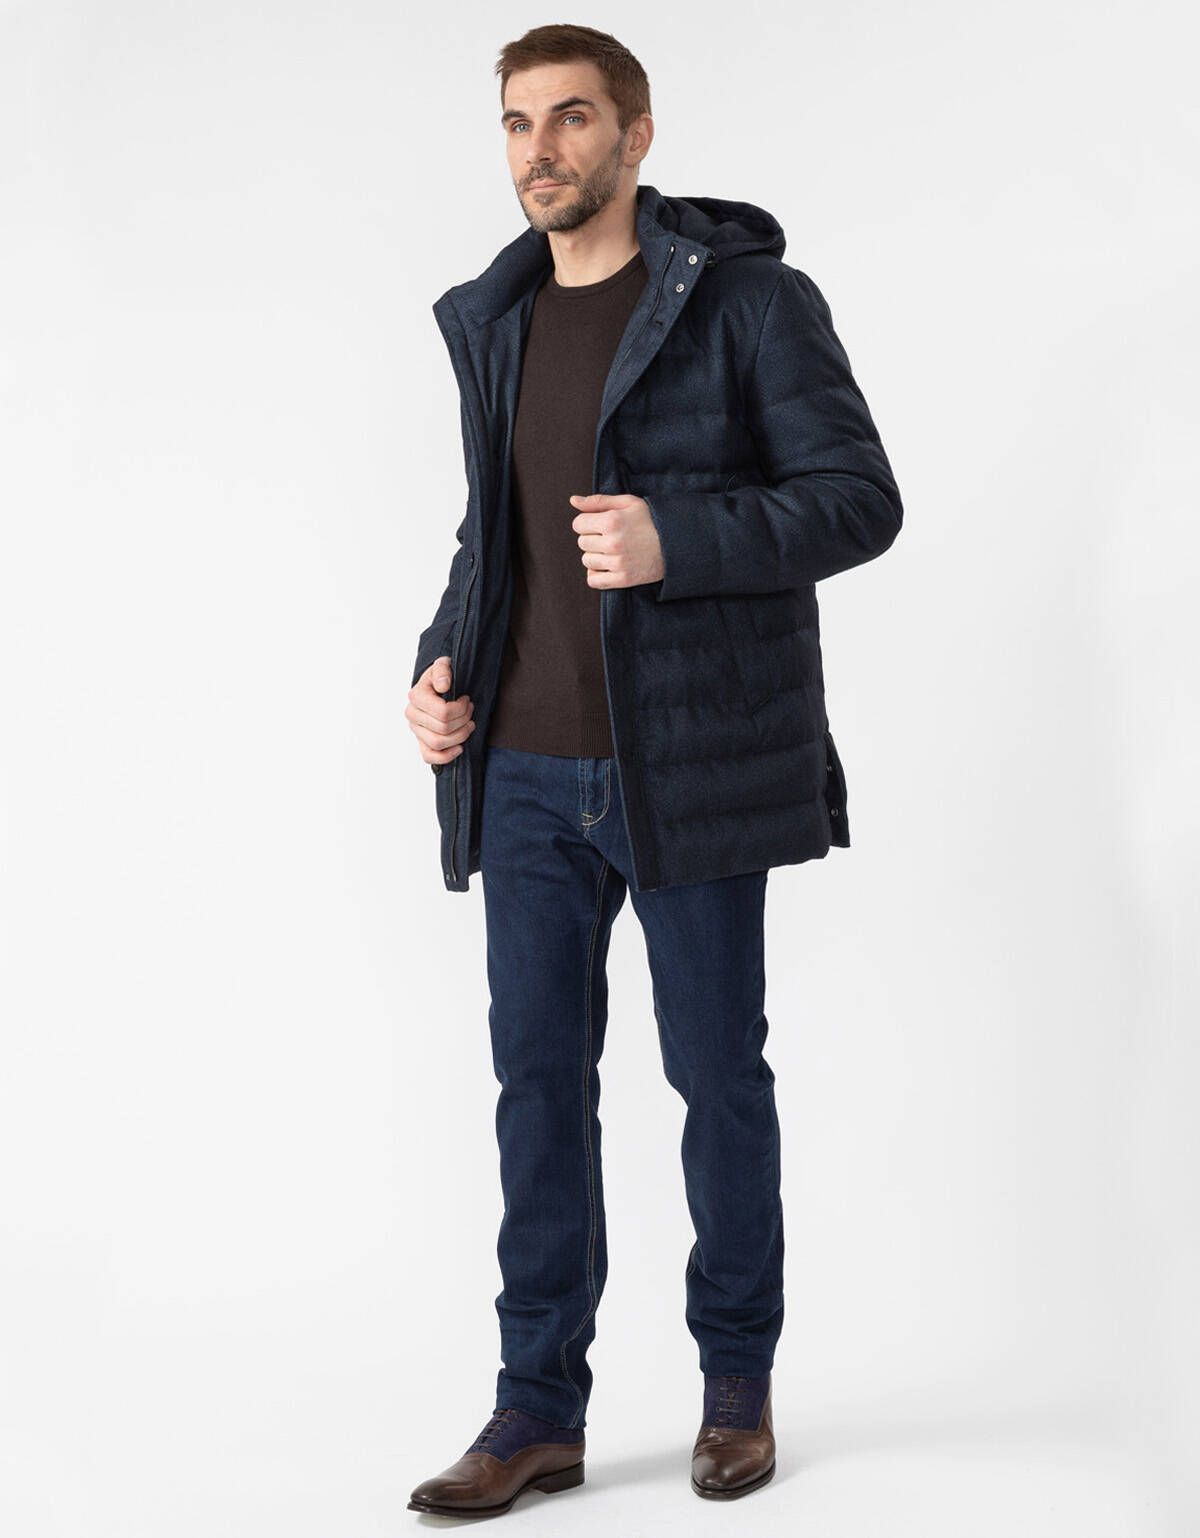 Куртка утеплённая Meucci стеганая с капюшоном | купить в интернет-магазине Olymp-Men